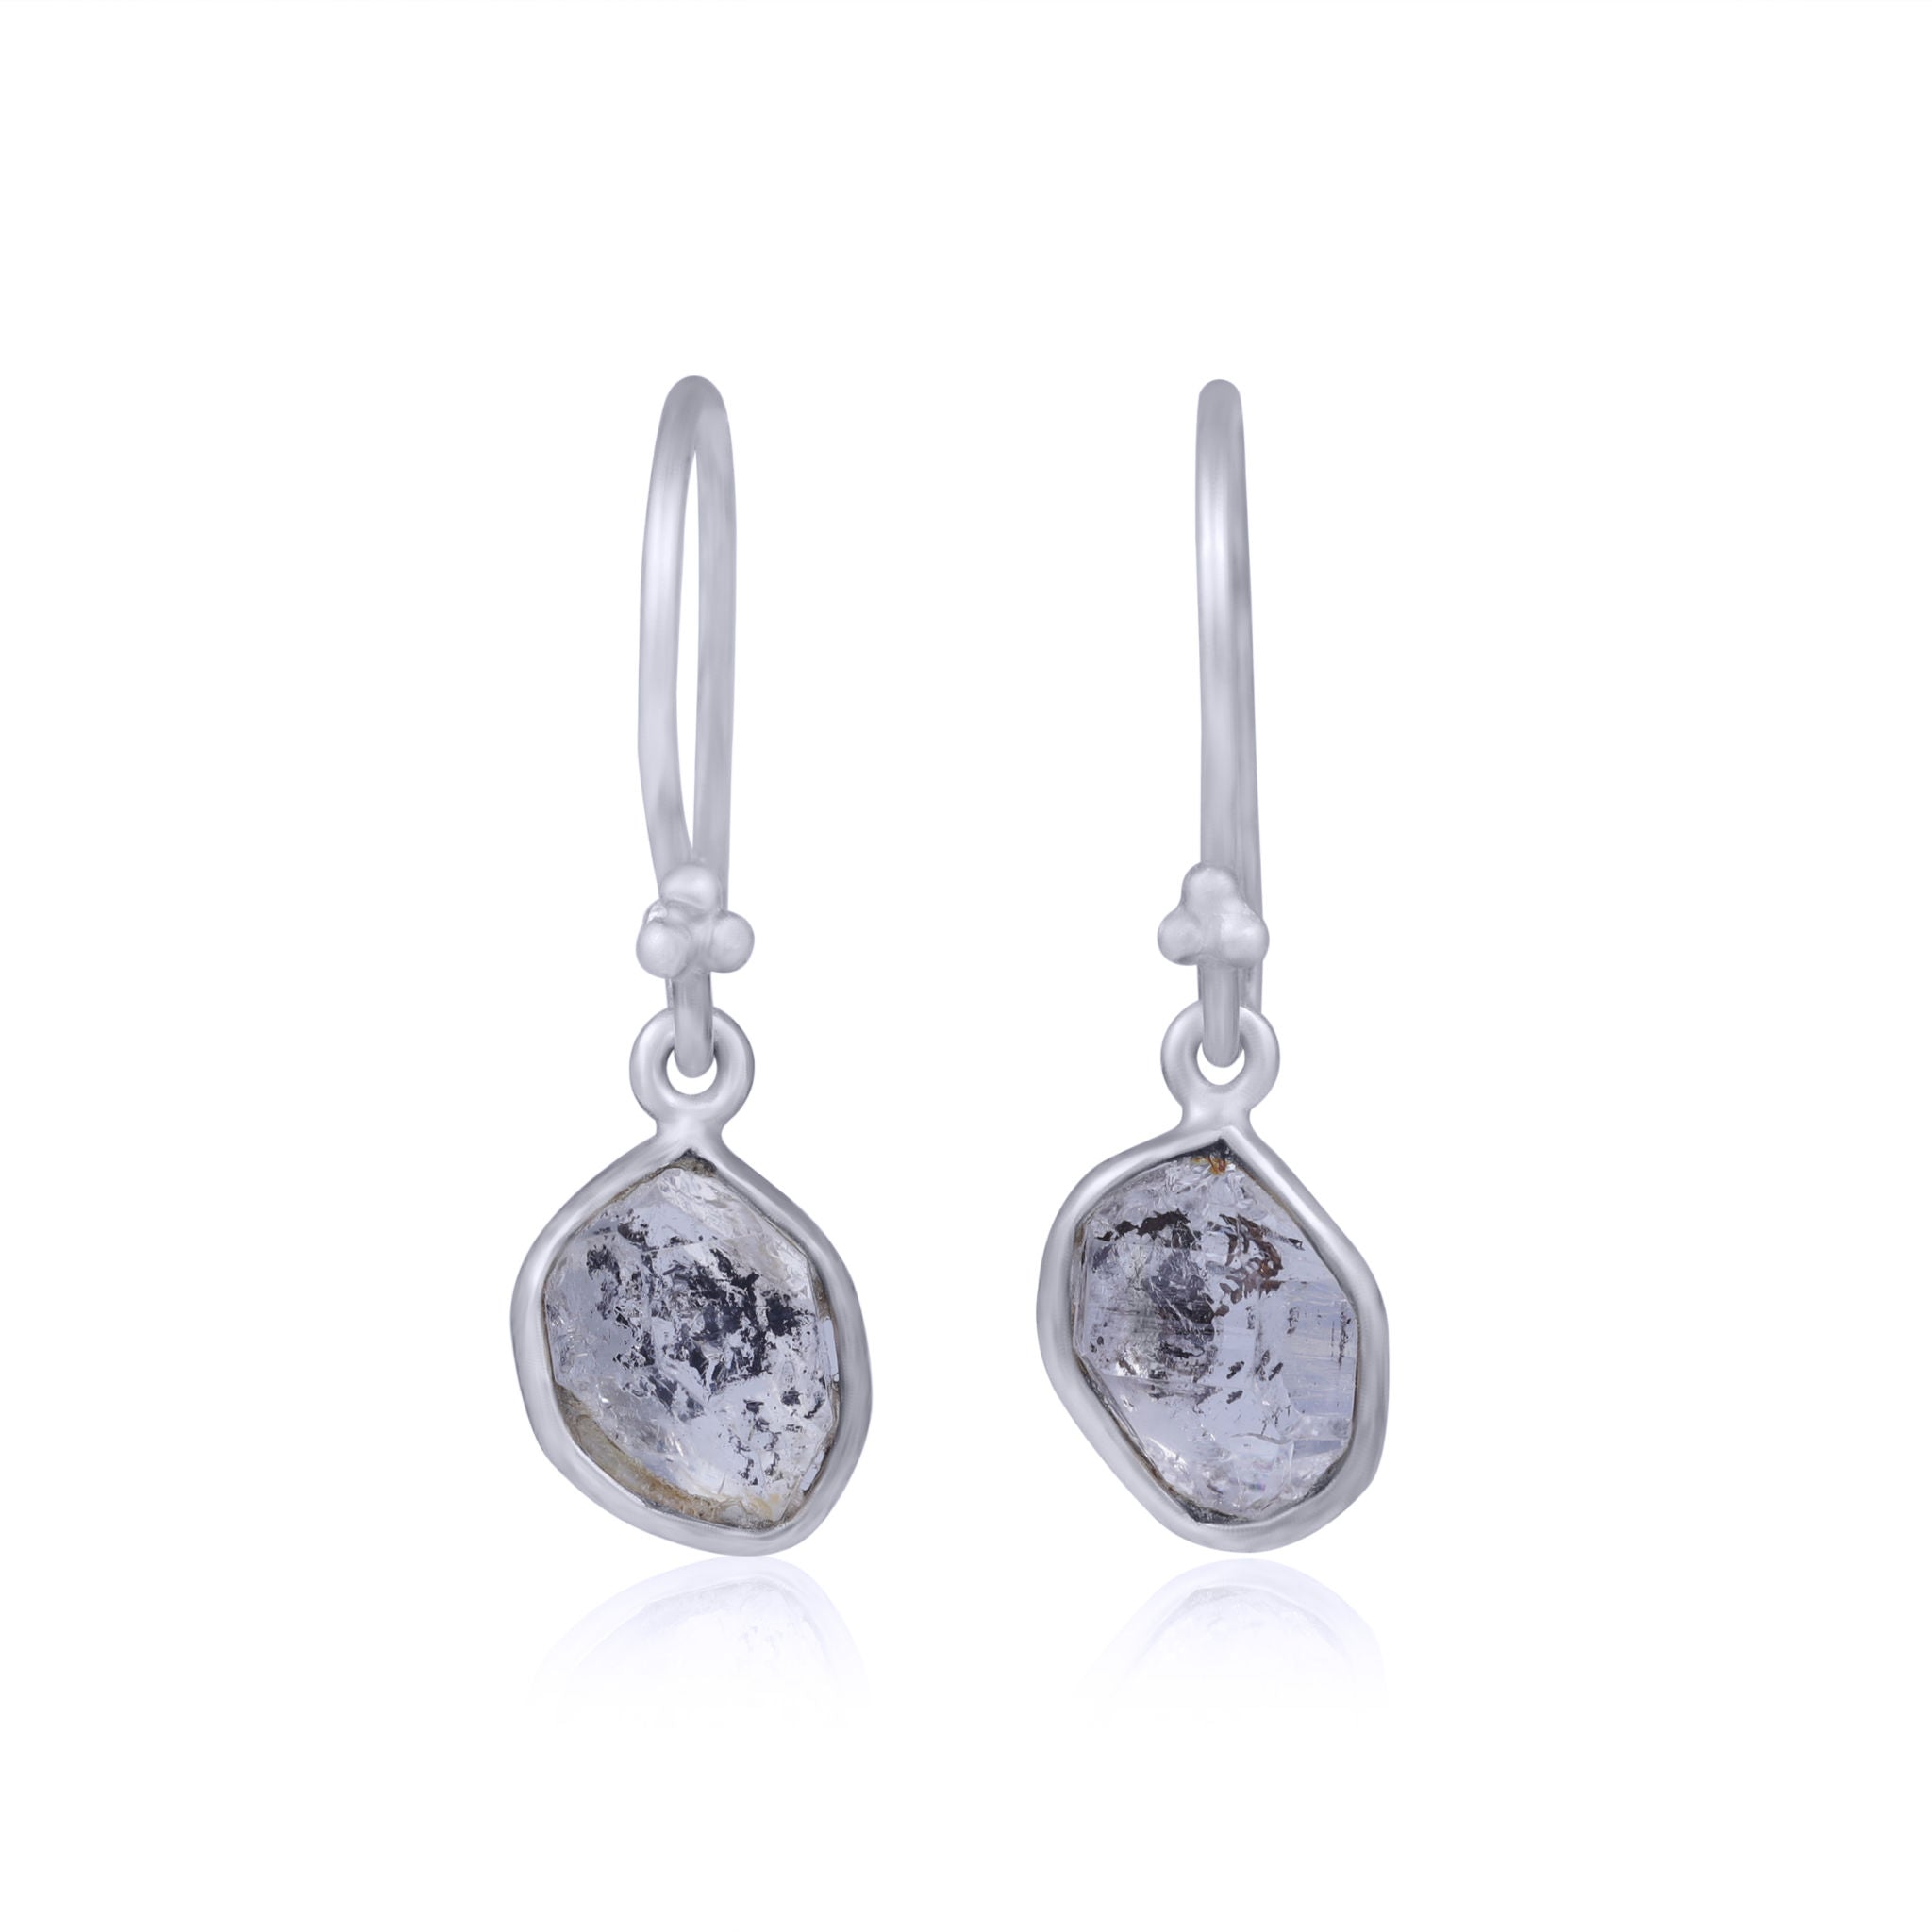 Caspian Earrings. Herkimer Diamond. 925 Silver